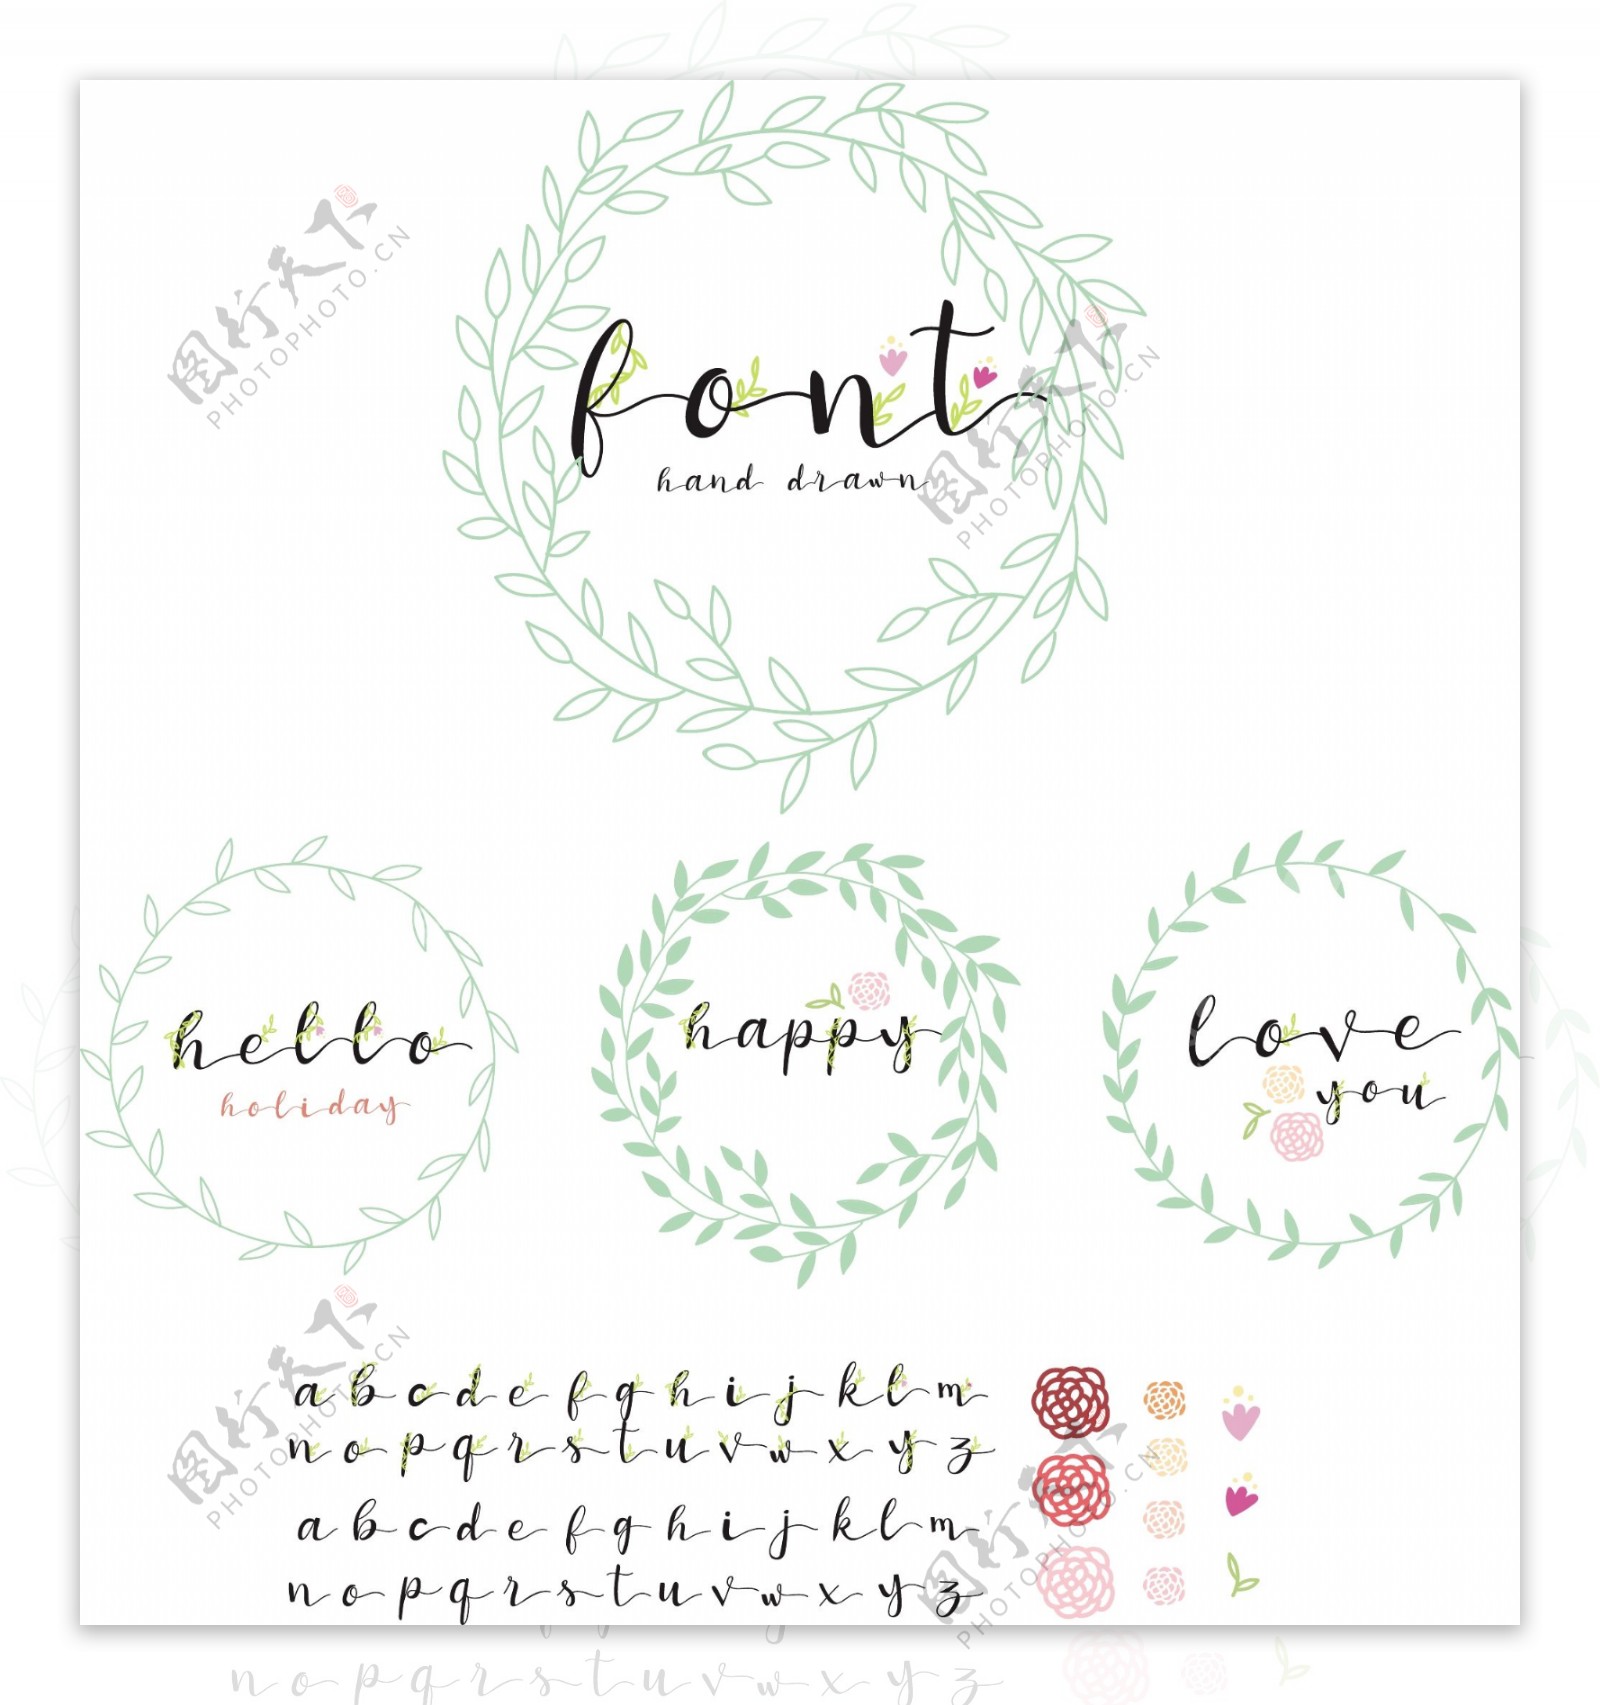 各种叶子装饰图案花边和字母设计集合